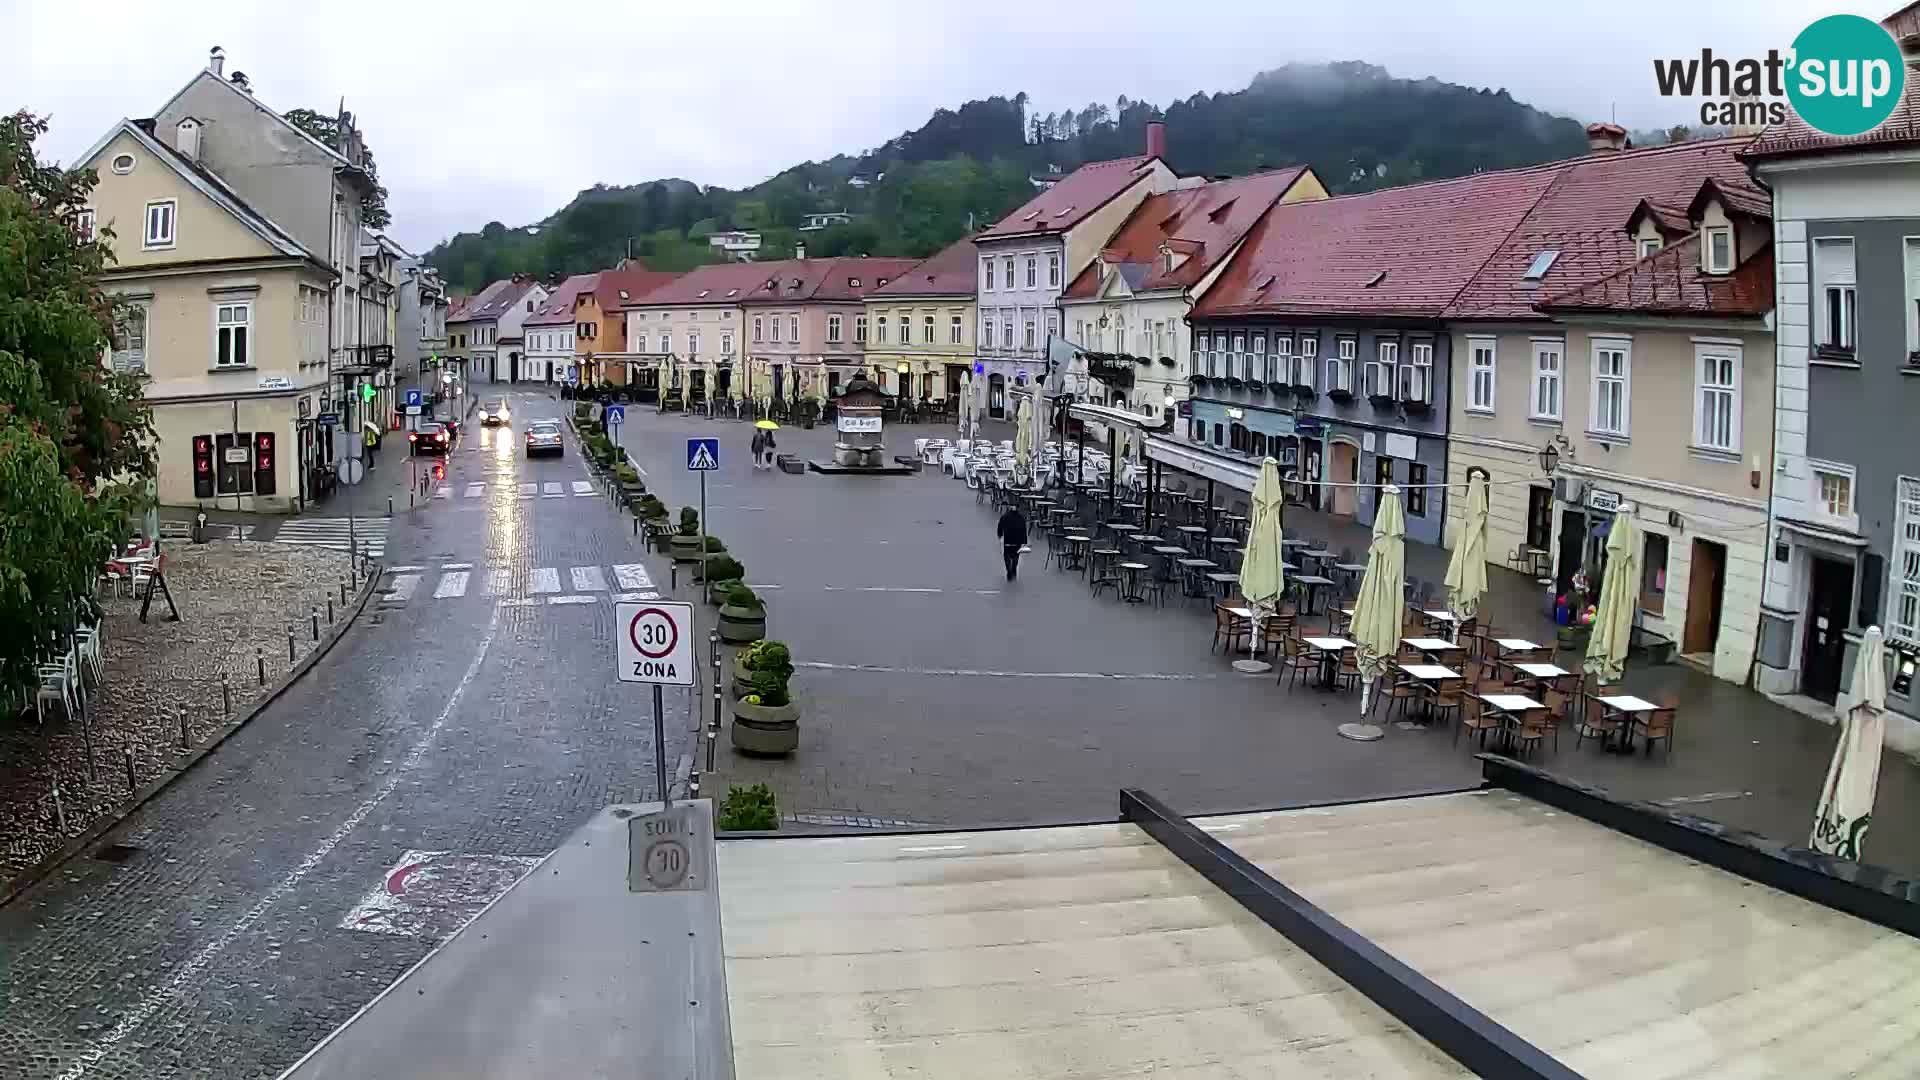 Samobor – Main square dedicated to King Tomislav